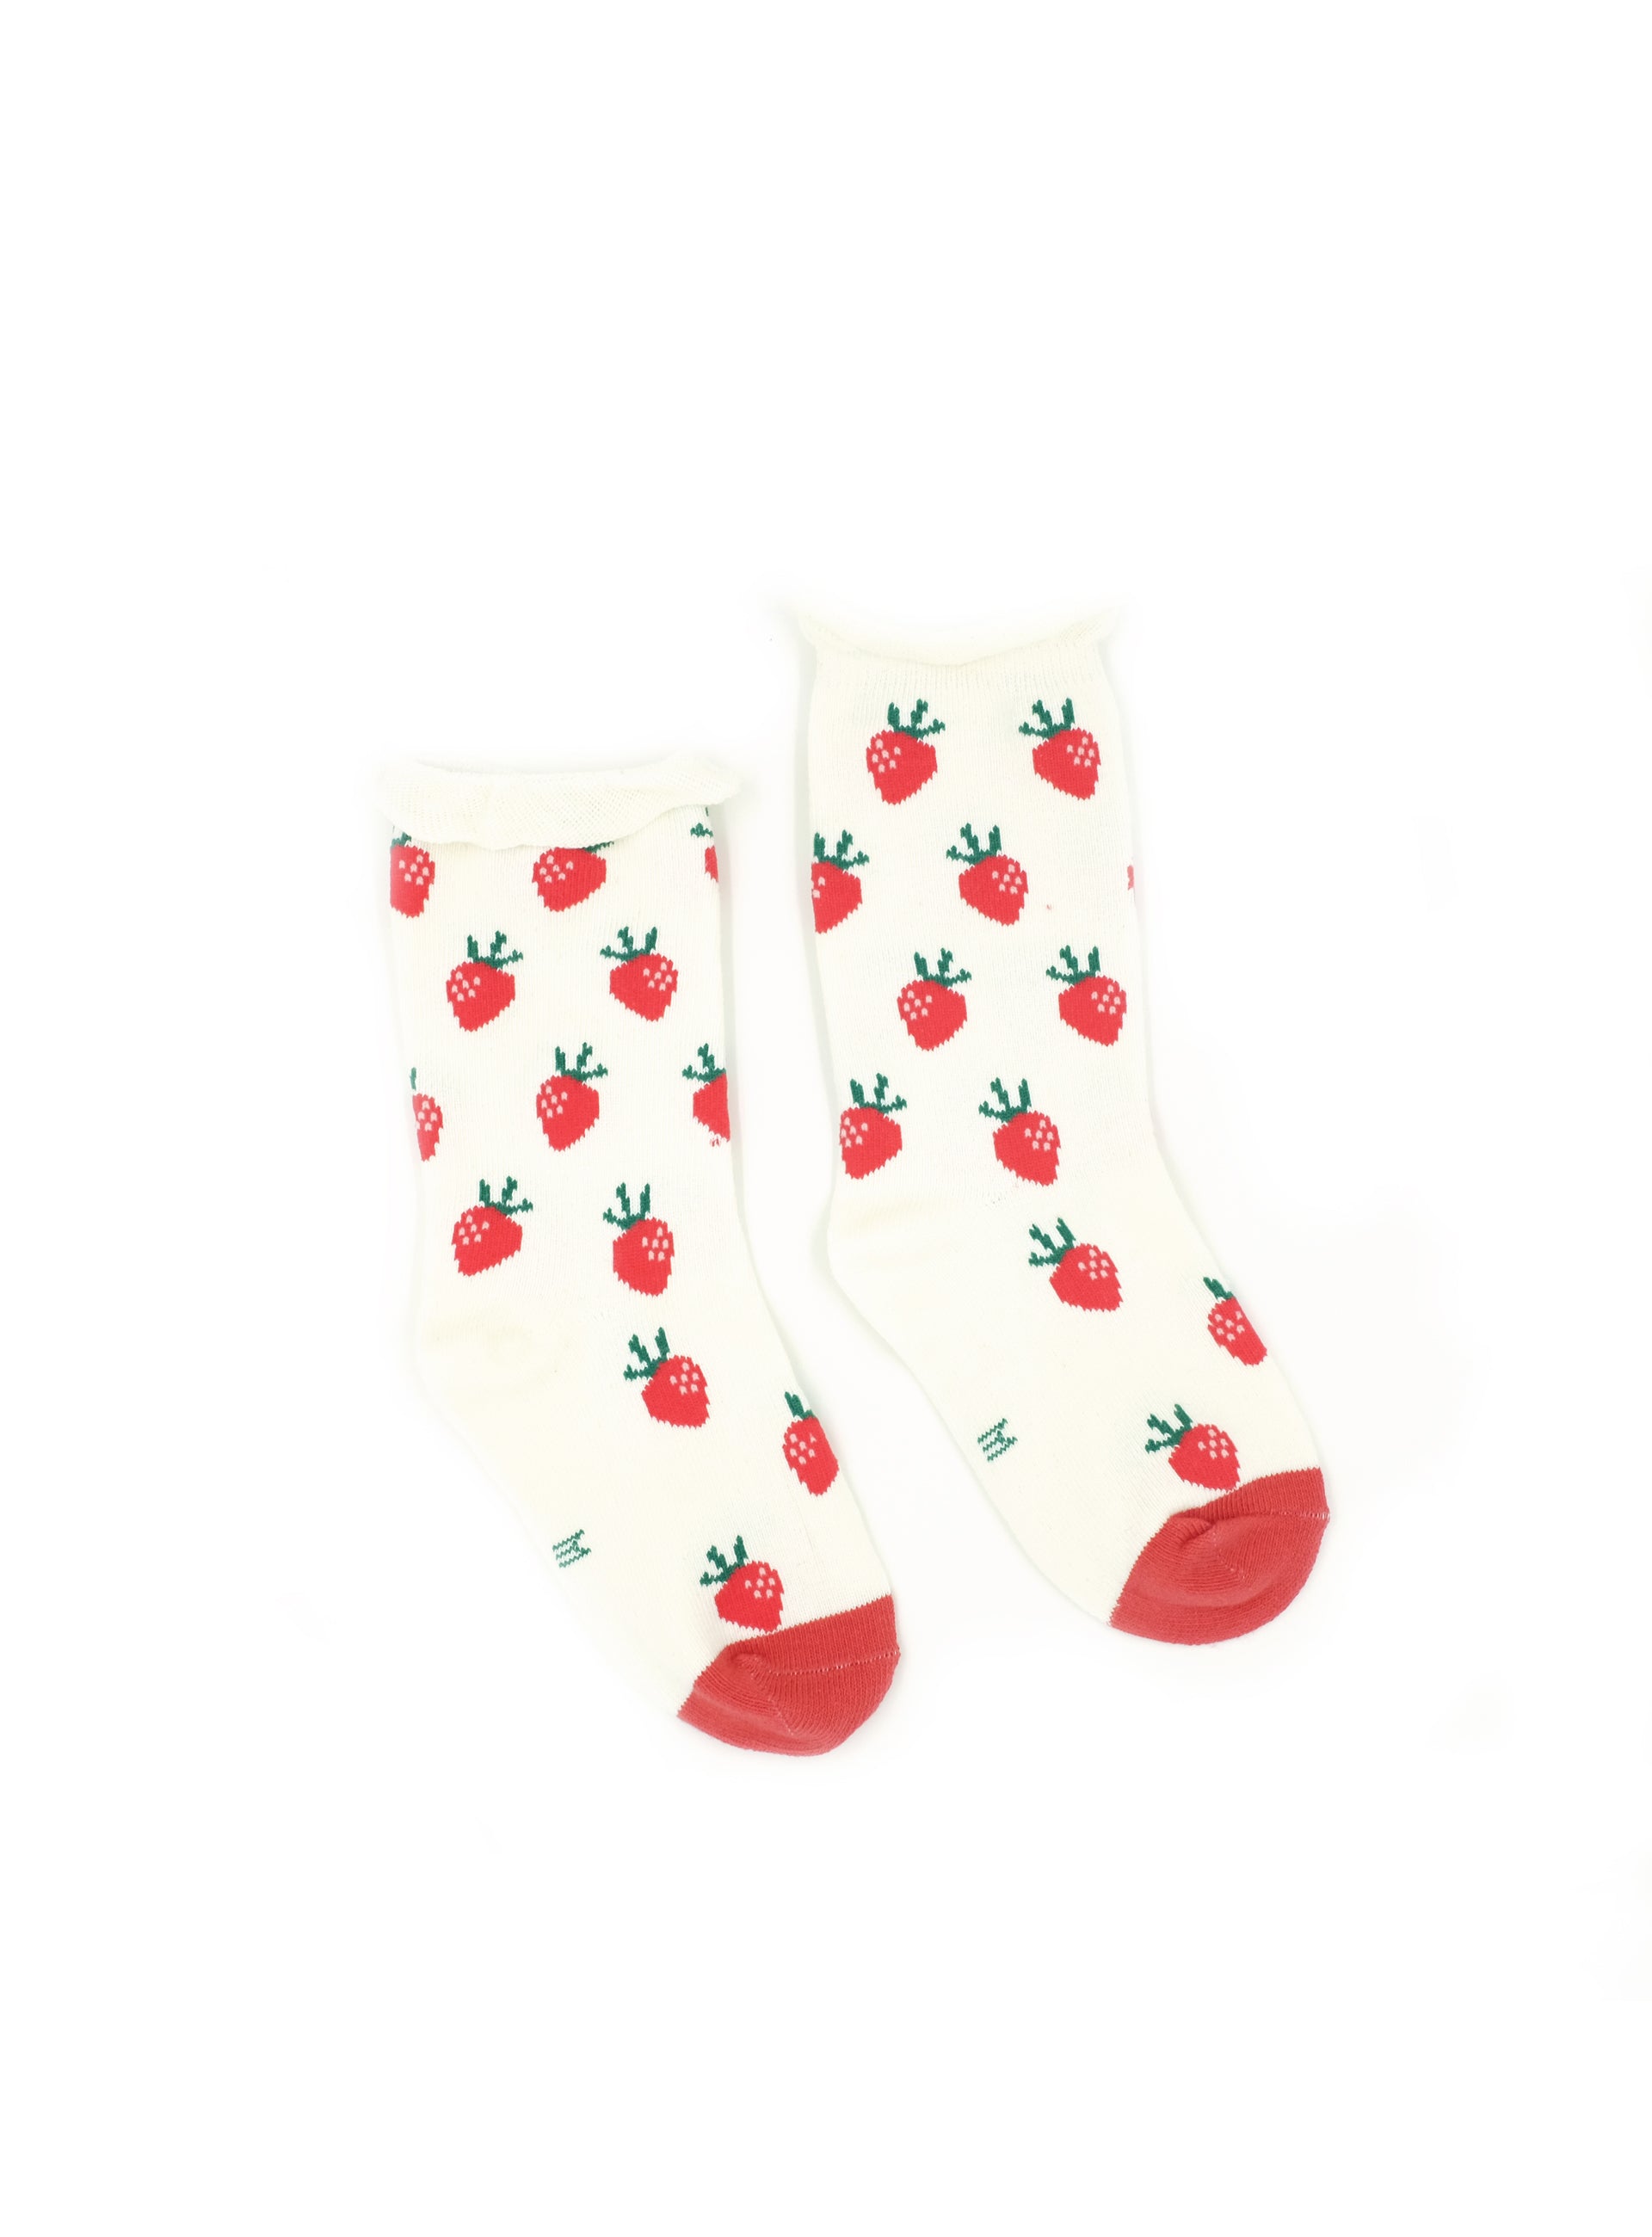 strawberry parfait socks